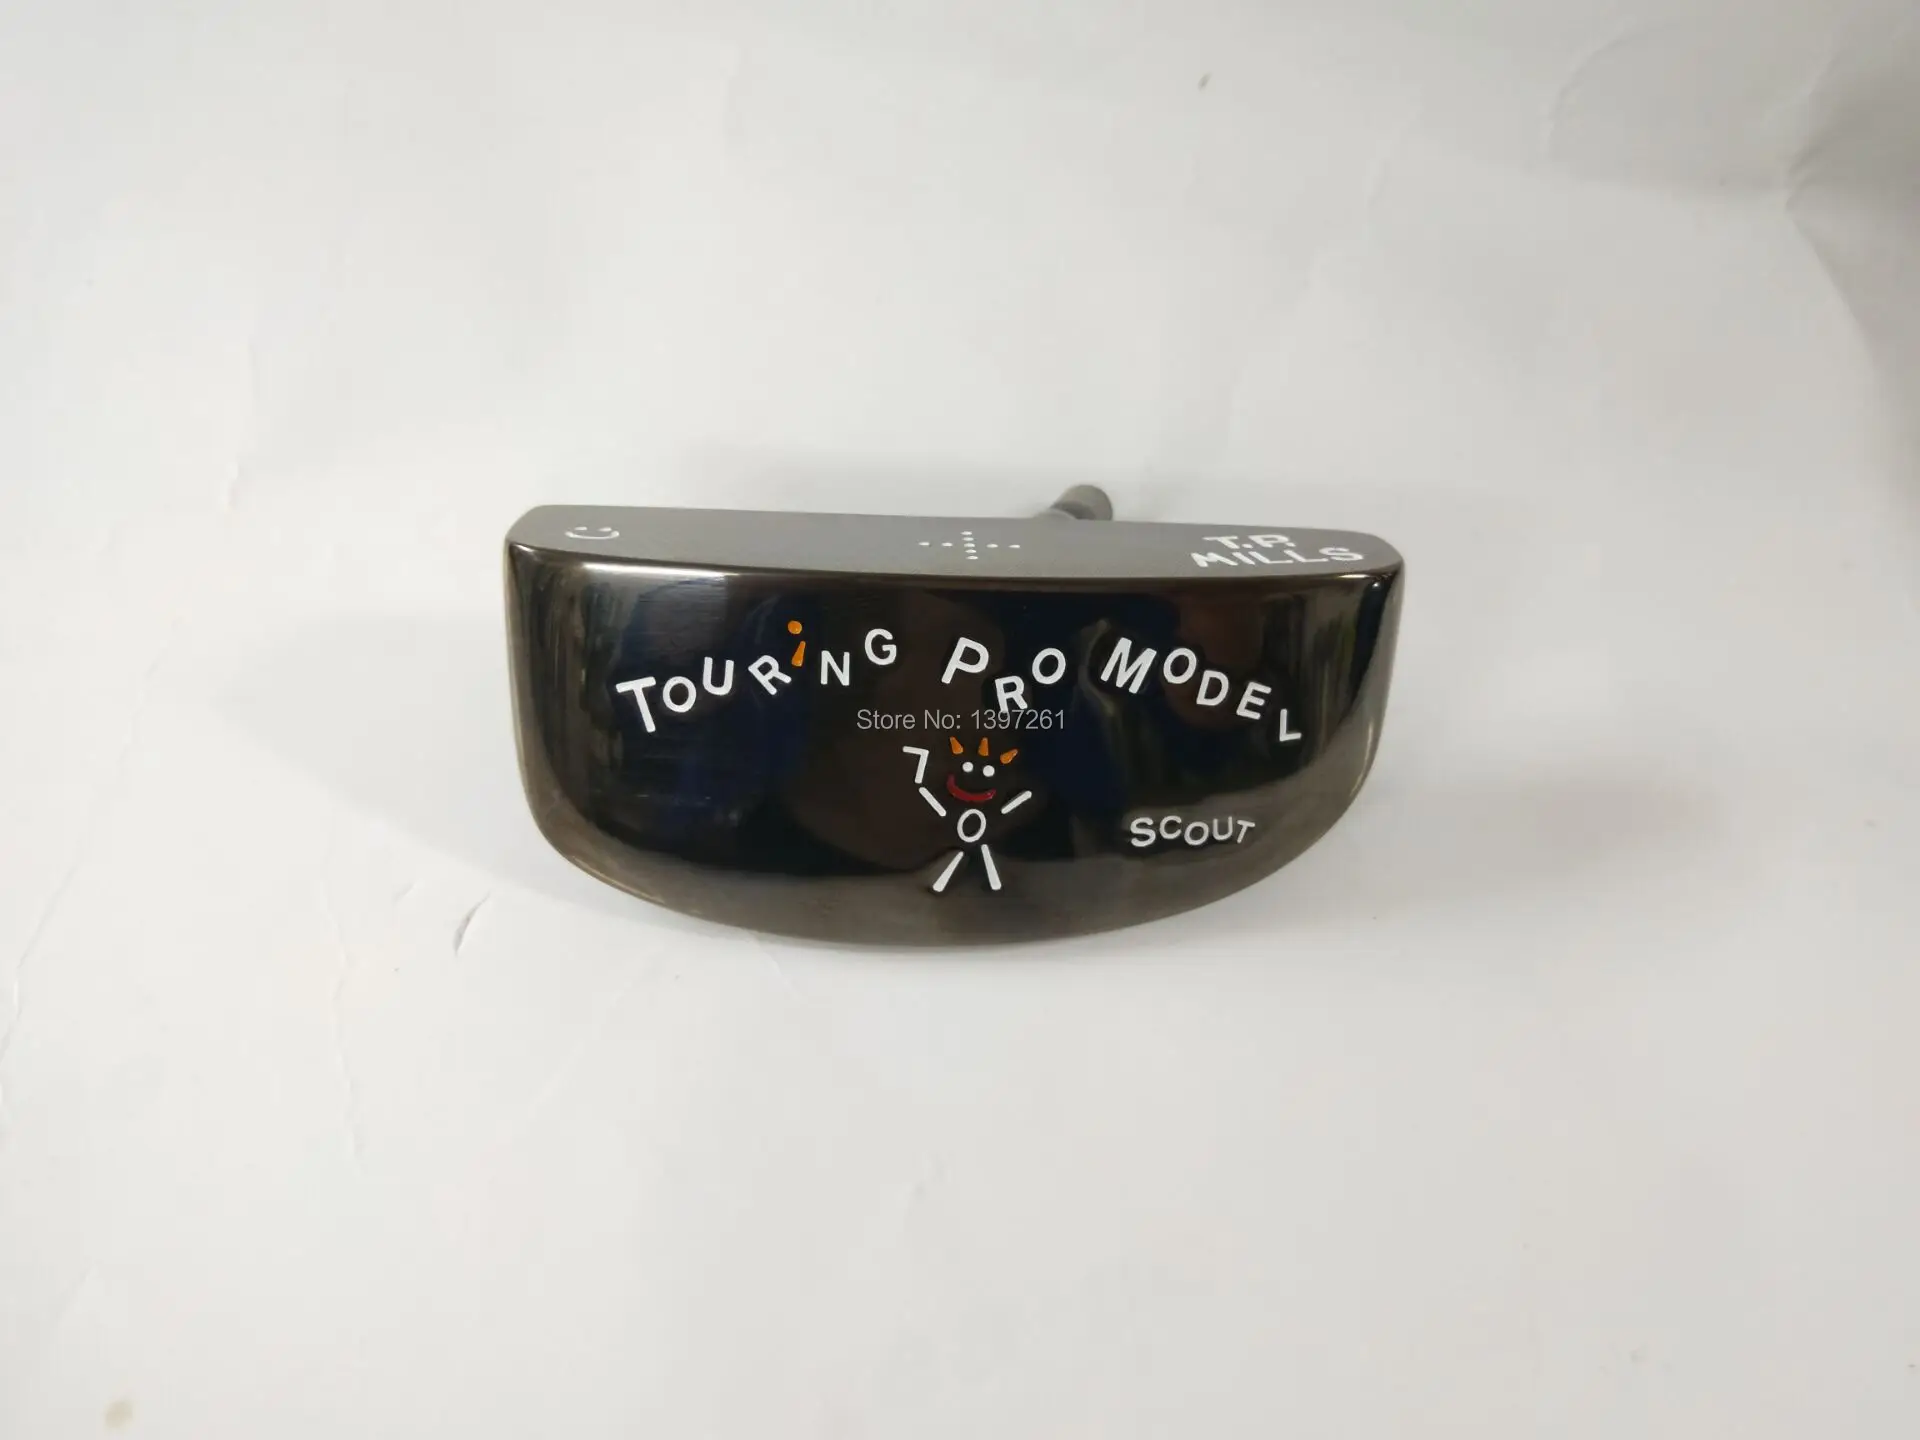 Гольф клубы TP MILLS HAWKER TOURING Golf putter head черный цвет головки для гольфа без клубов